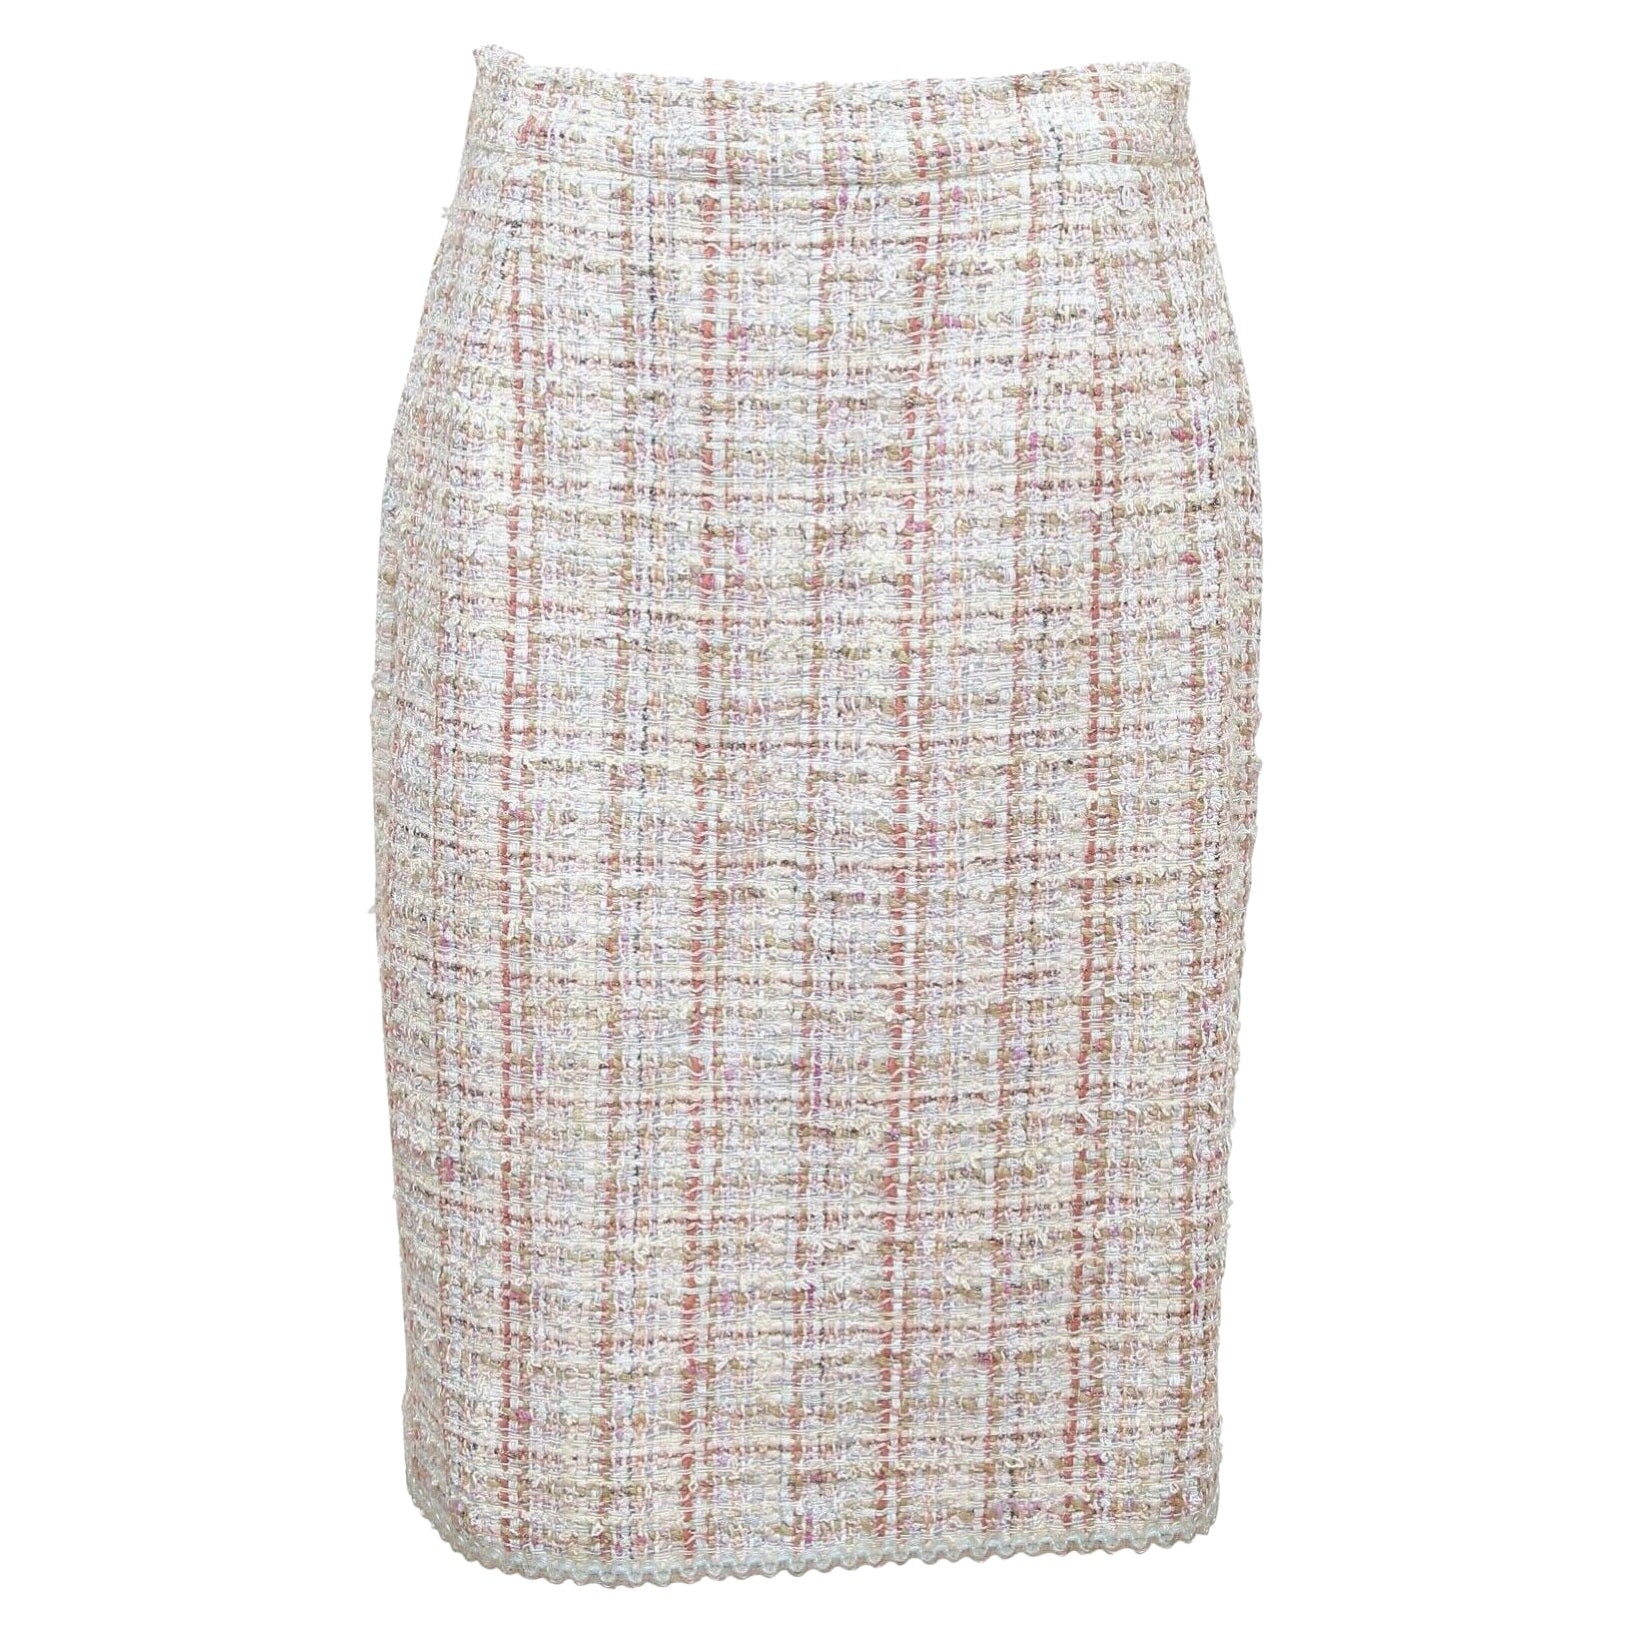 CHANEL Tweed Skirt Fantasy Multi-Color Camellia Cotton 2013 RUNWAY SZ 40